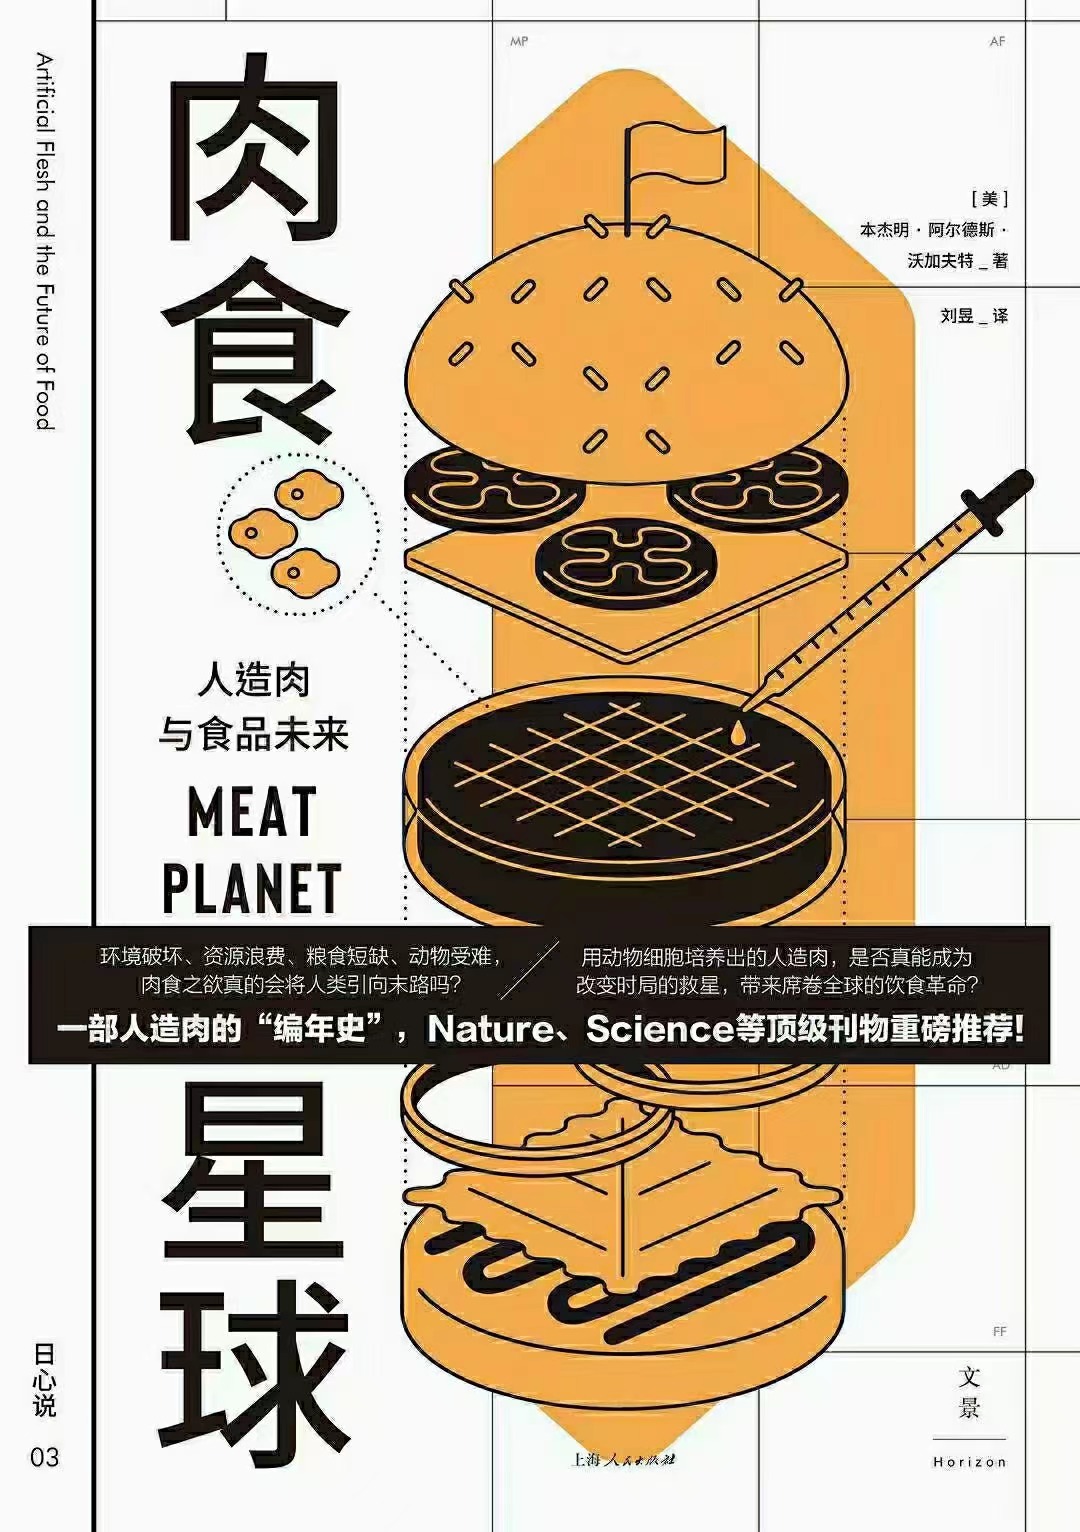 【电子书上新】 ★《肉食星球》 ~人造肉与食品未来